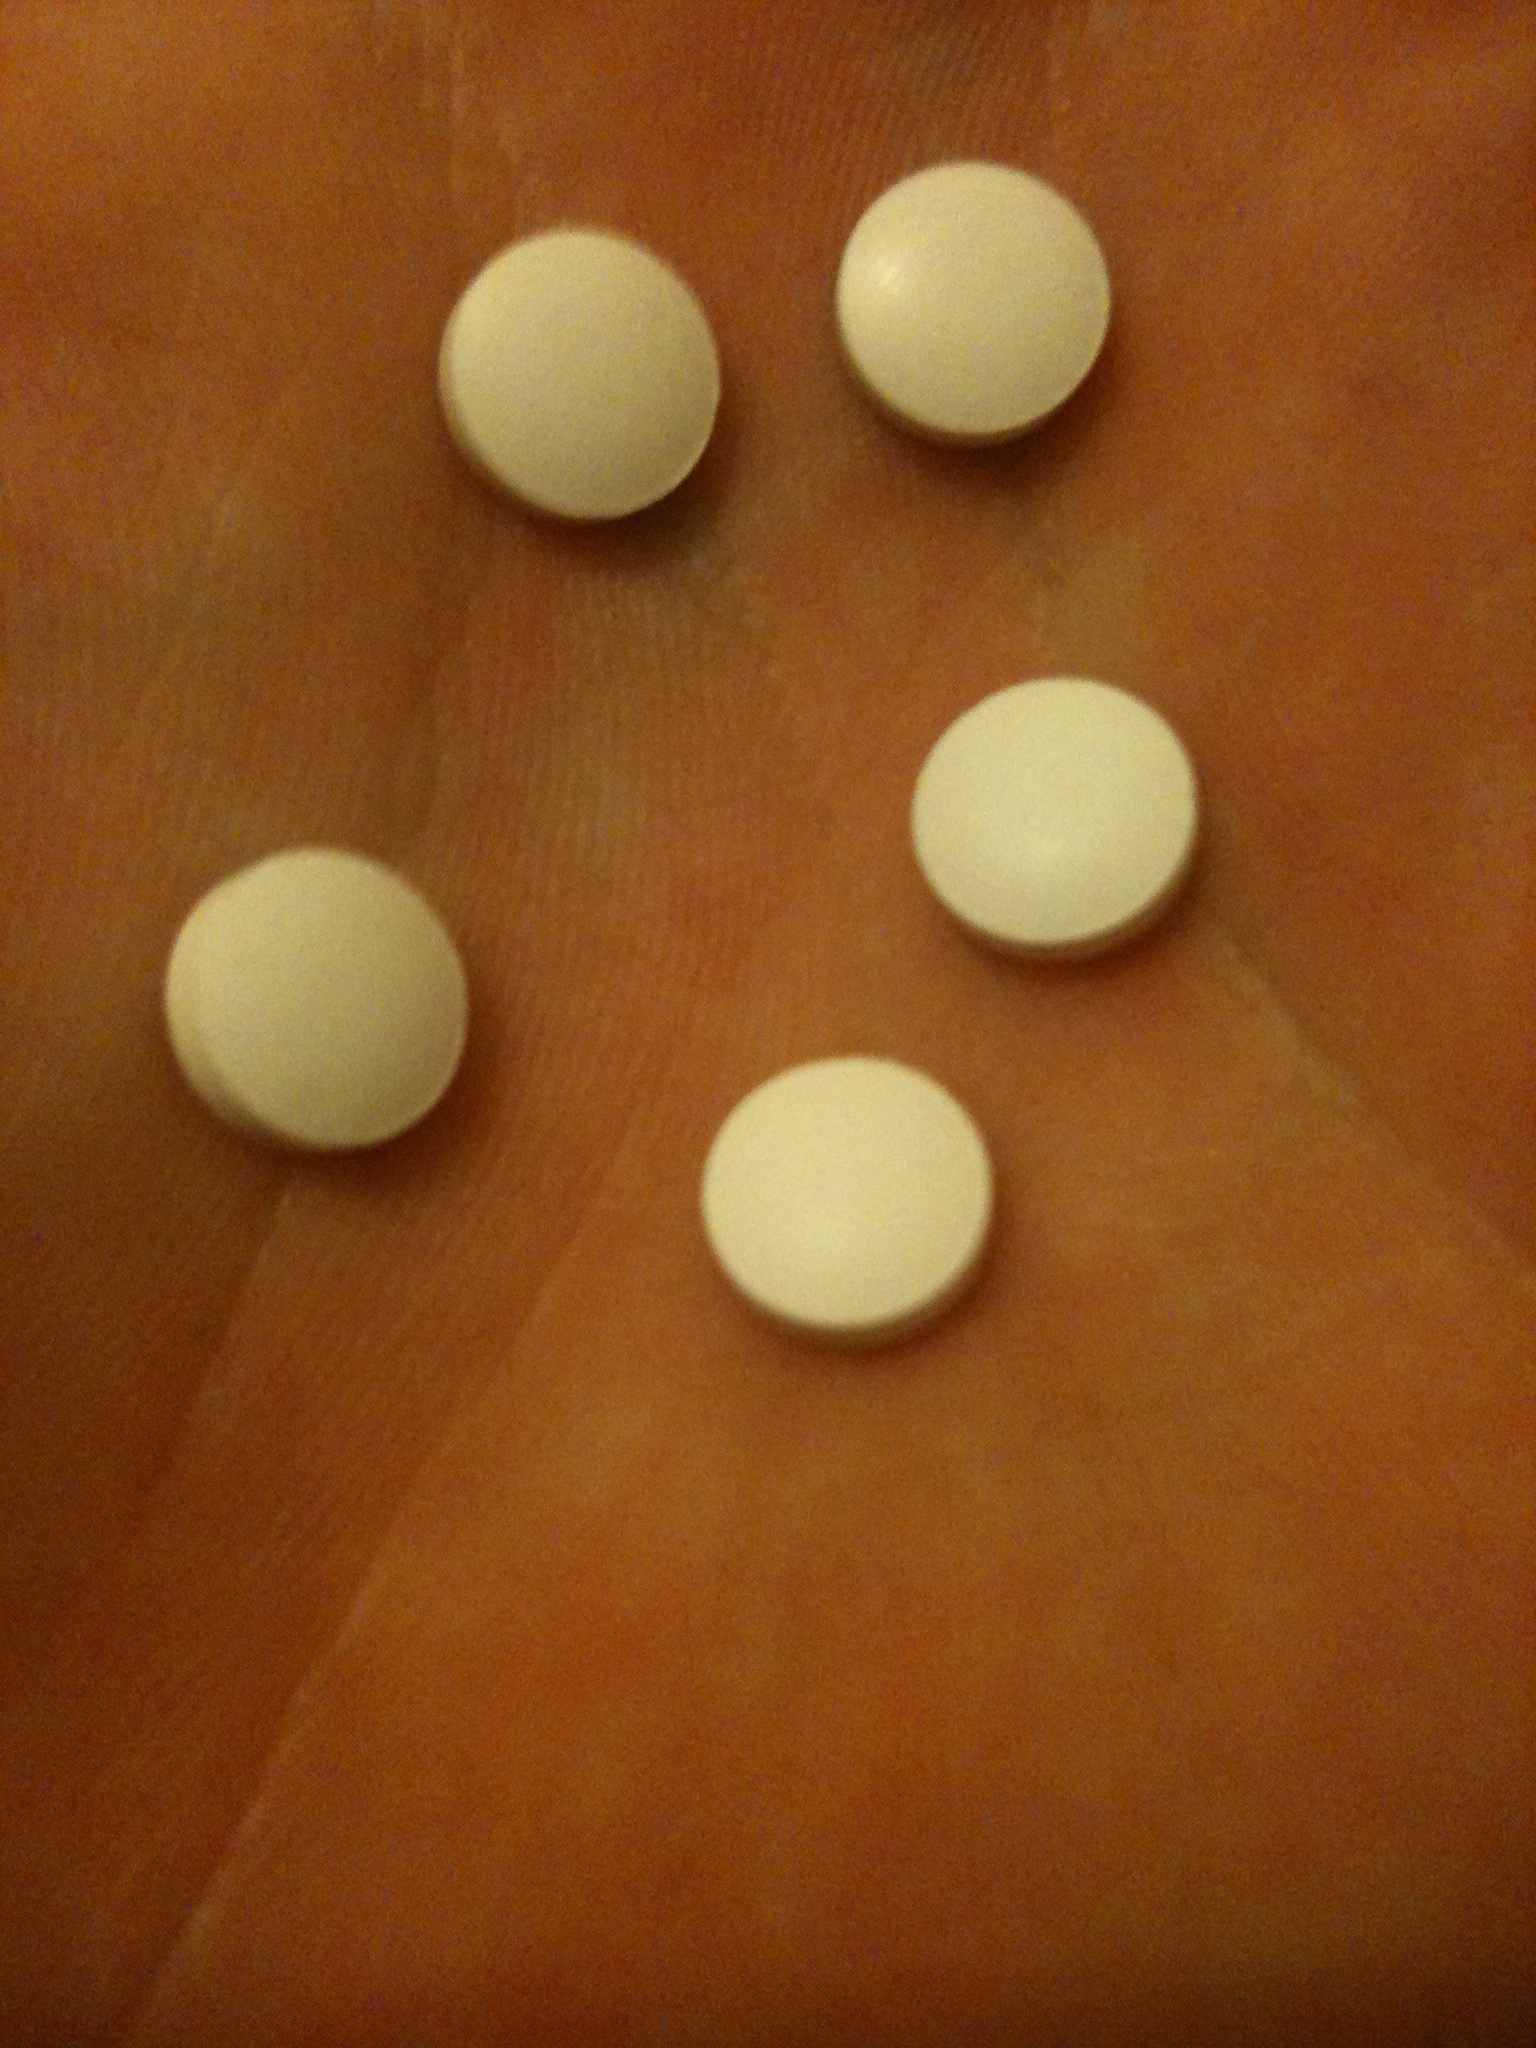 Dbol Steroid Pills